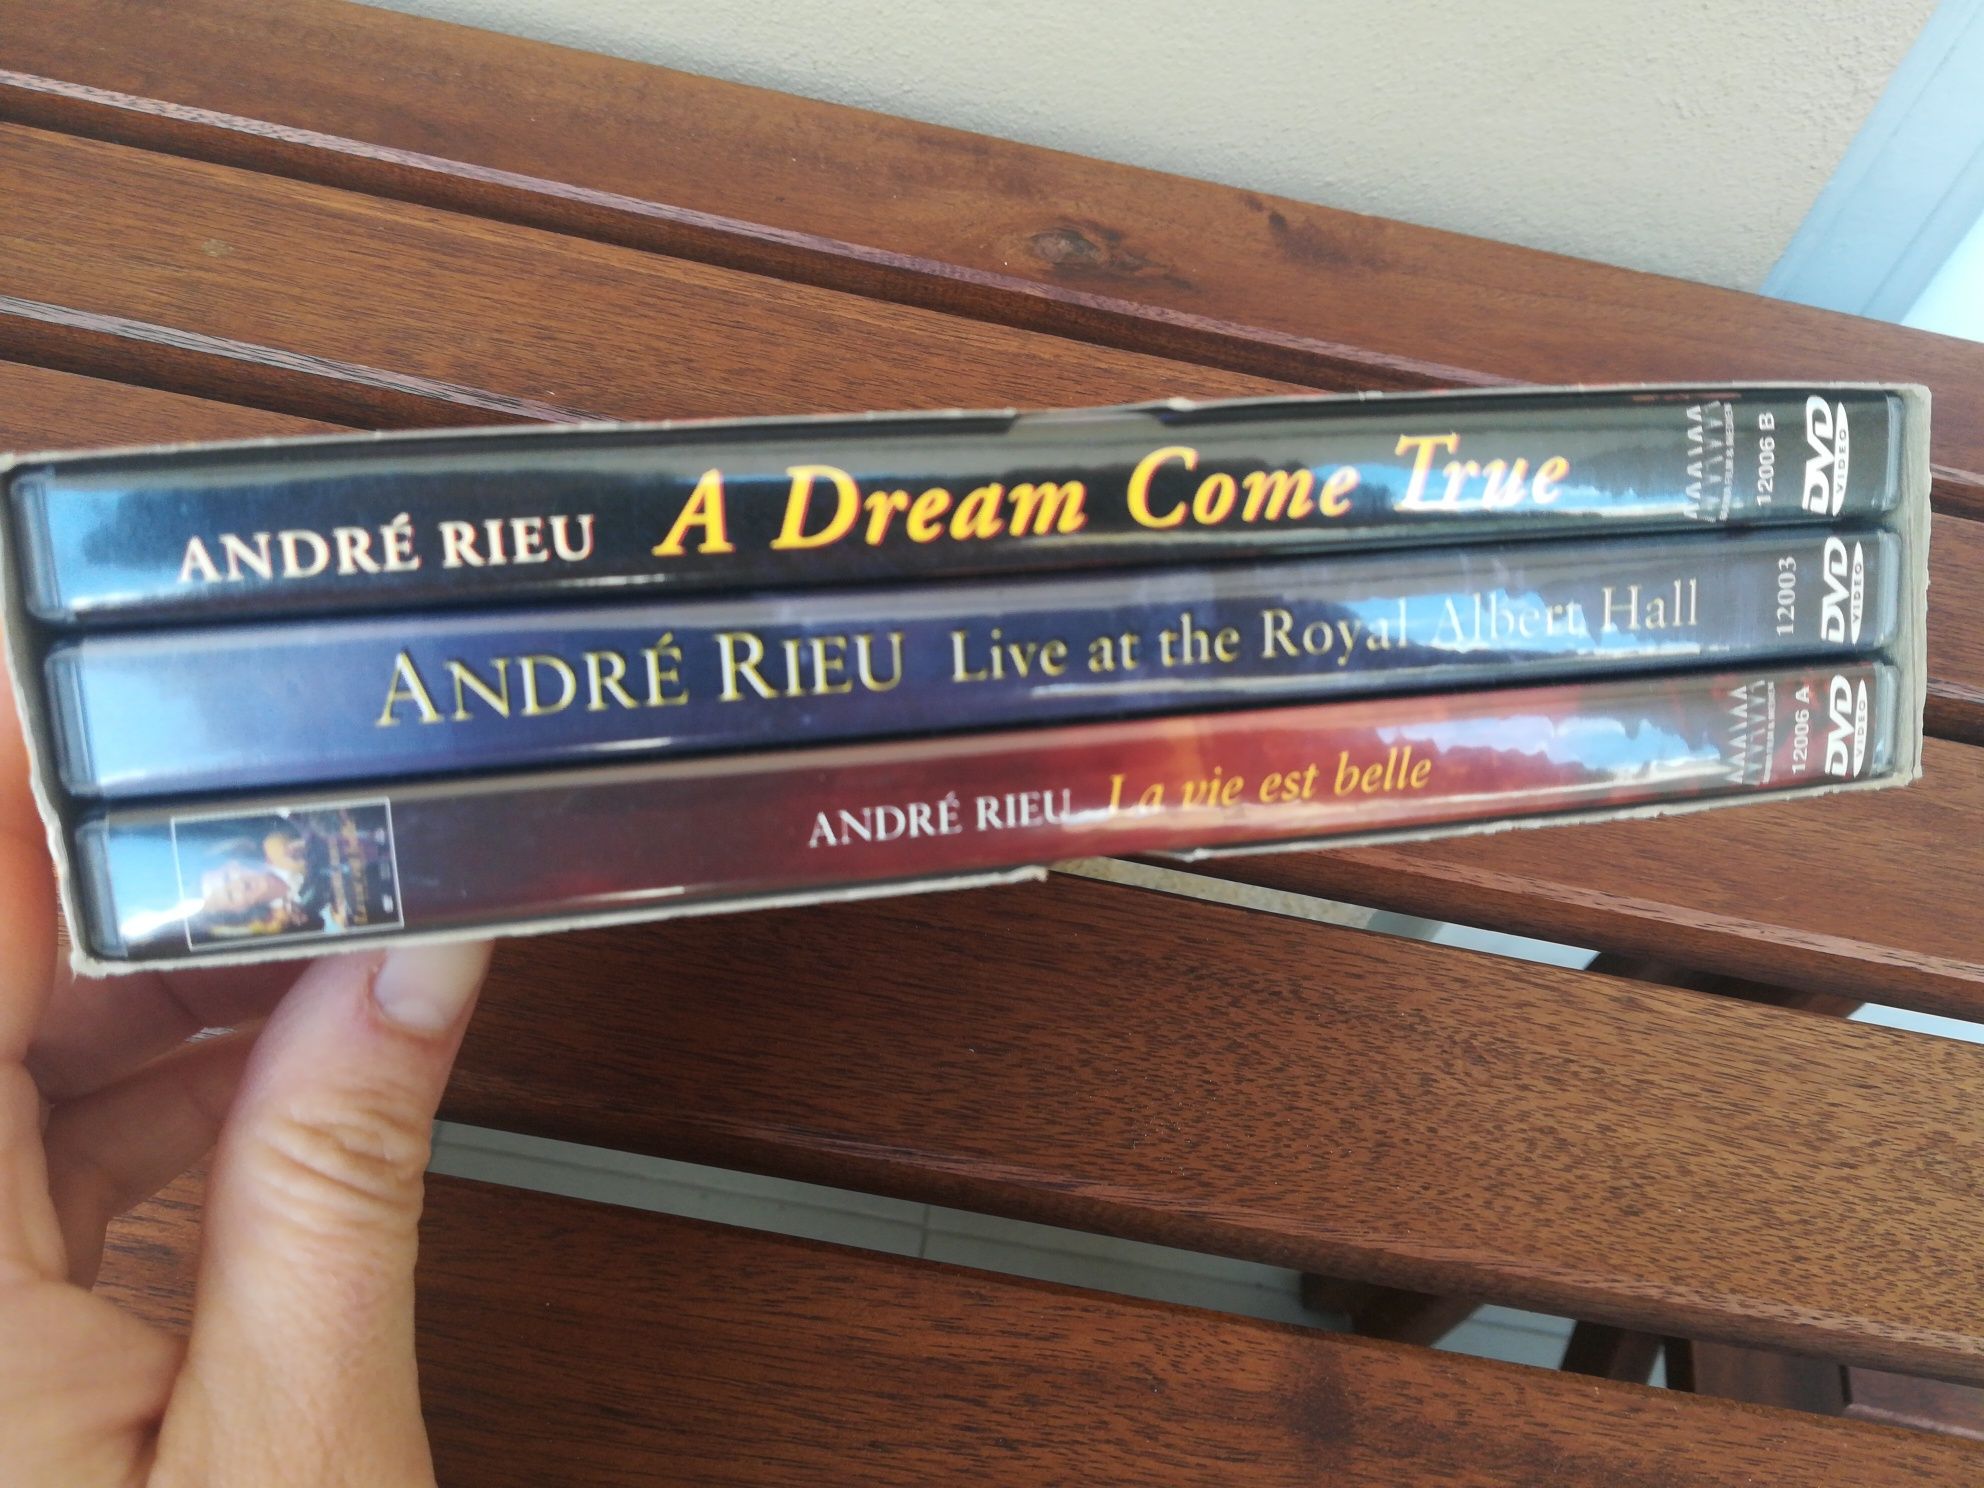 DVD Best of André Rieu